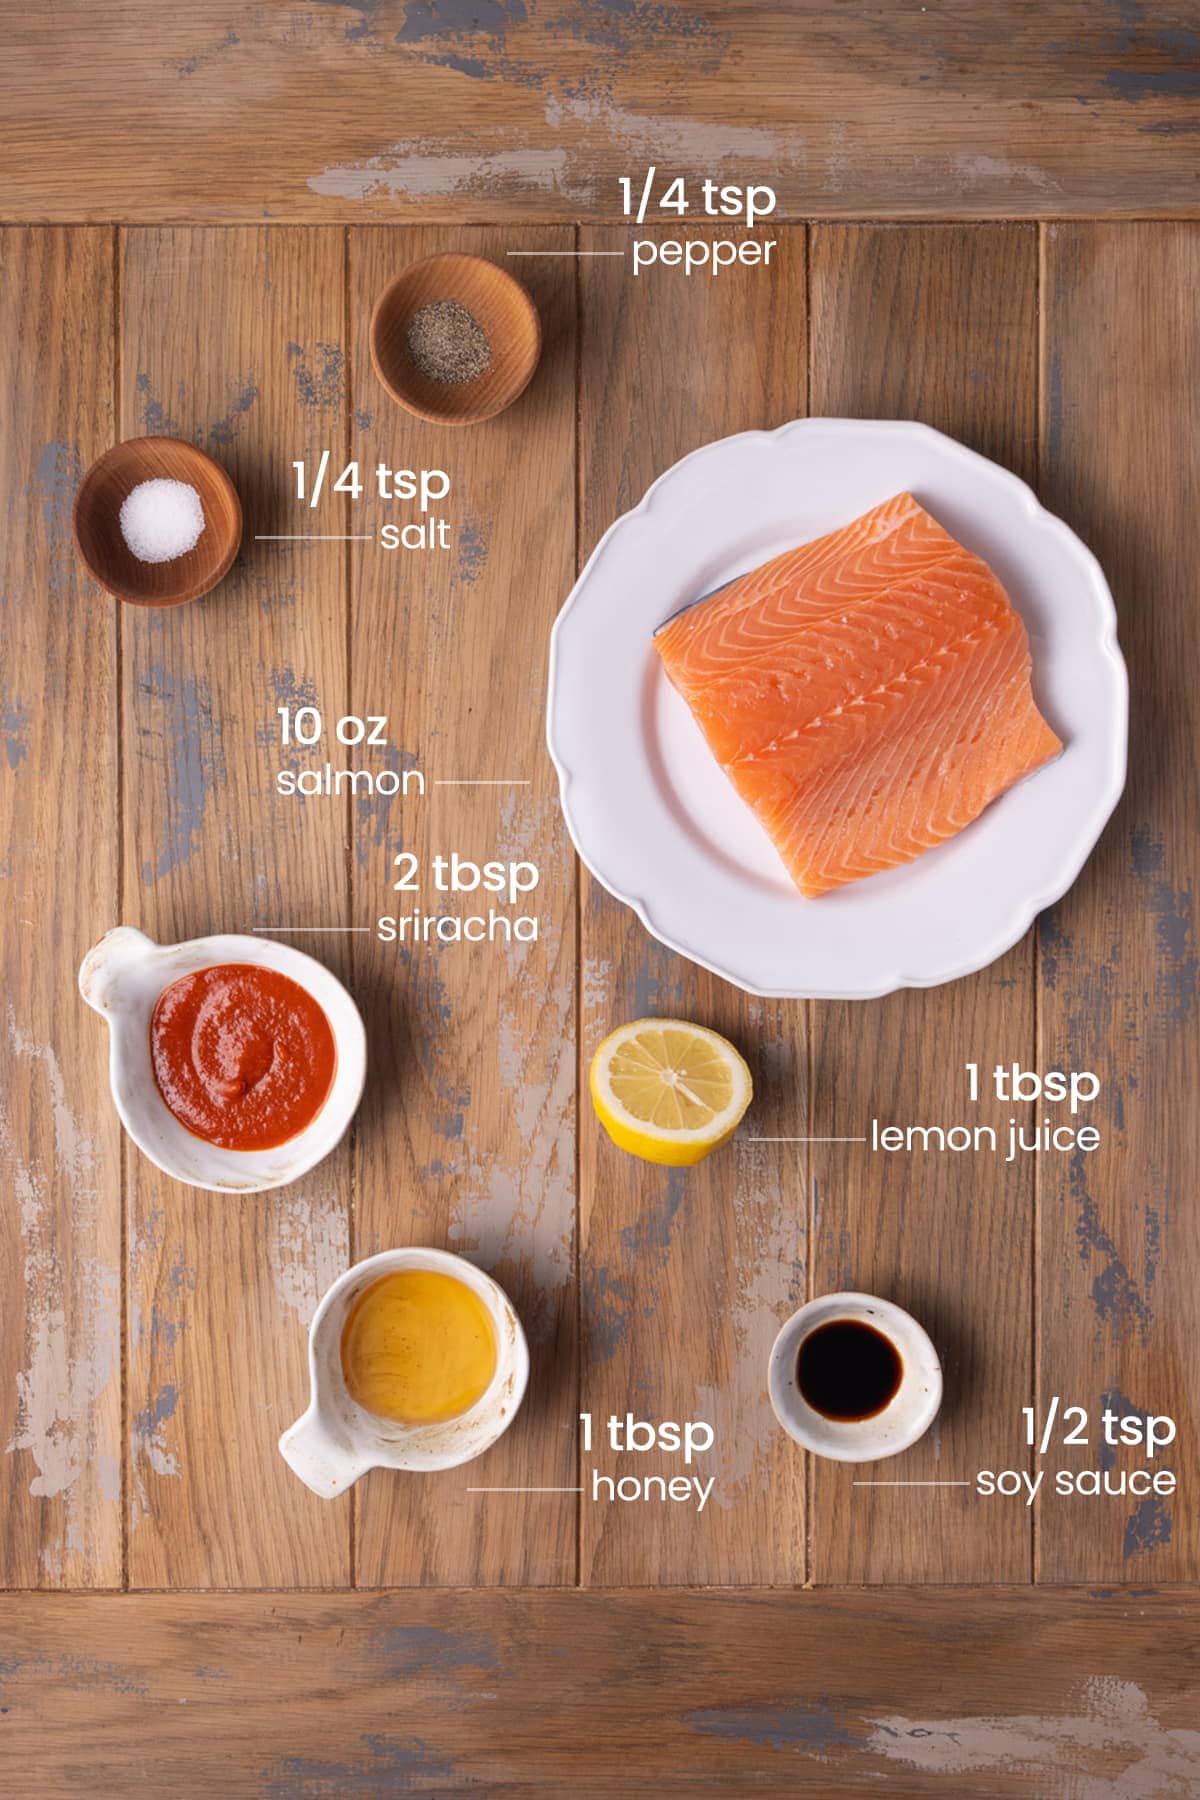 all ingredients for honey sriracha salmon - pepper, salt, salmon, sriracha, lemon juice, honey, soy sauce